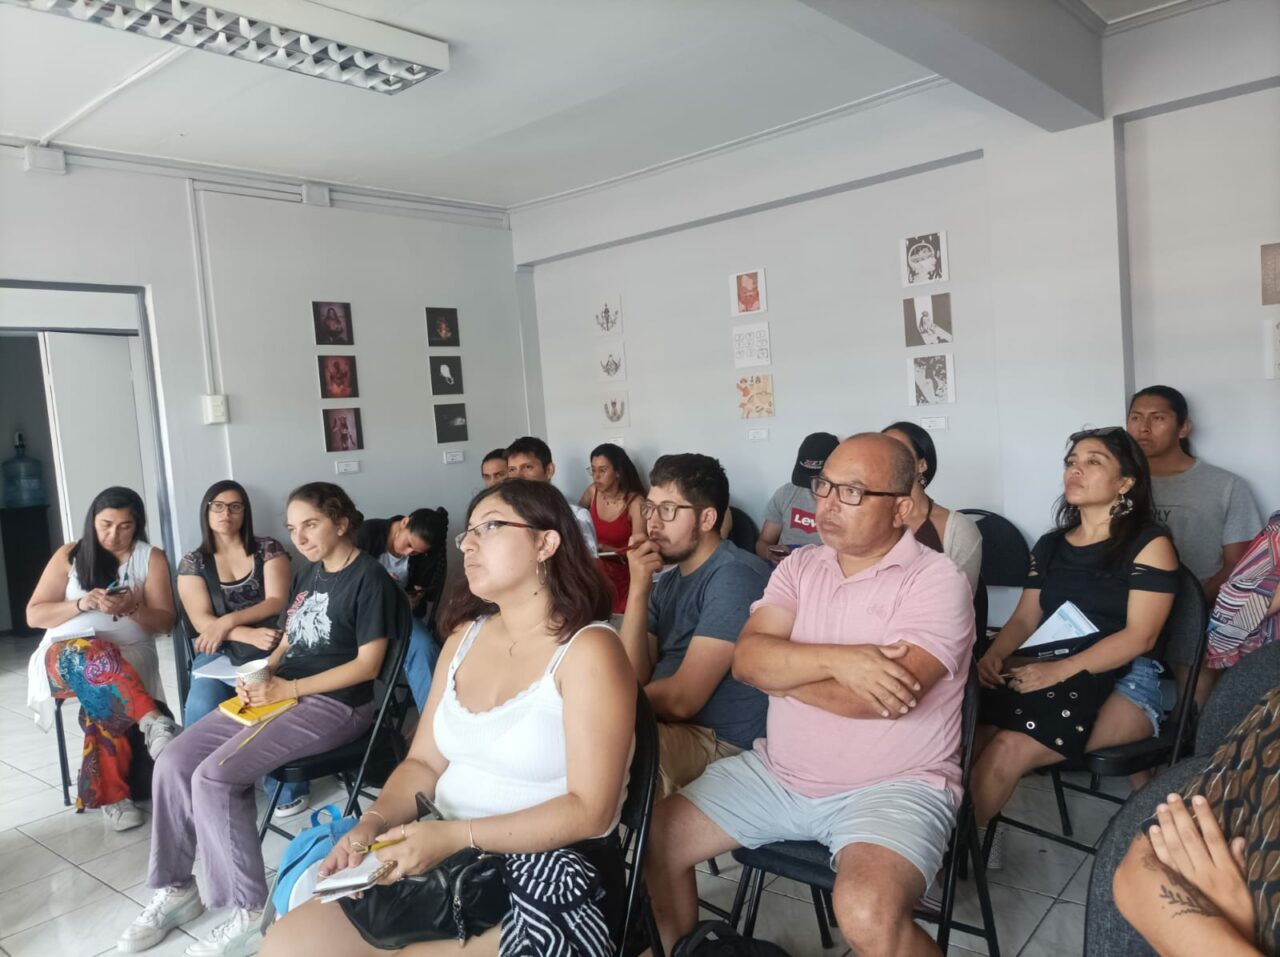 Compañía Teatral la Favorecedora dictará taller gratuito de elaboración de proyectos artísticos y culturales en Tocopilla